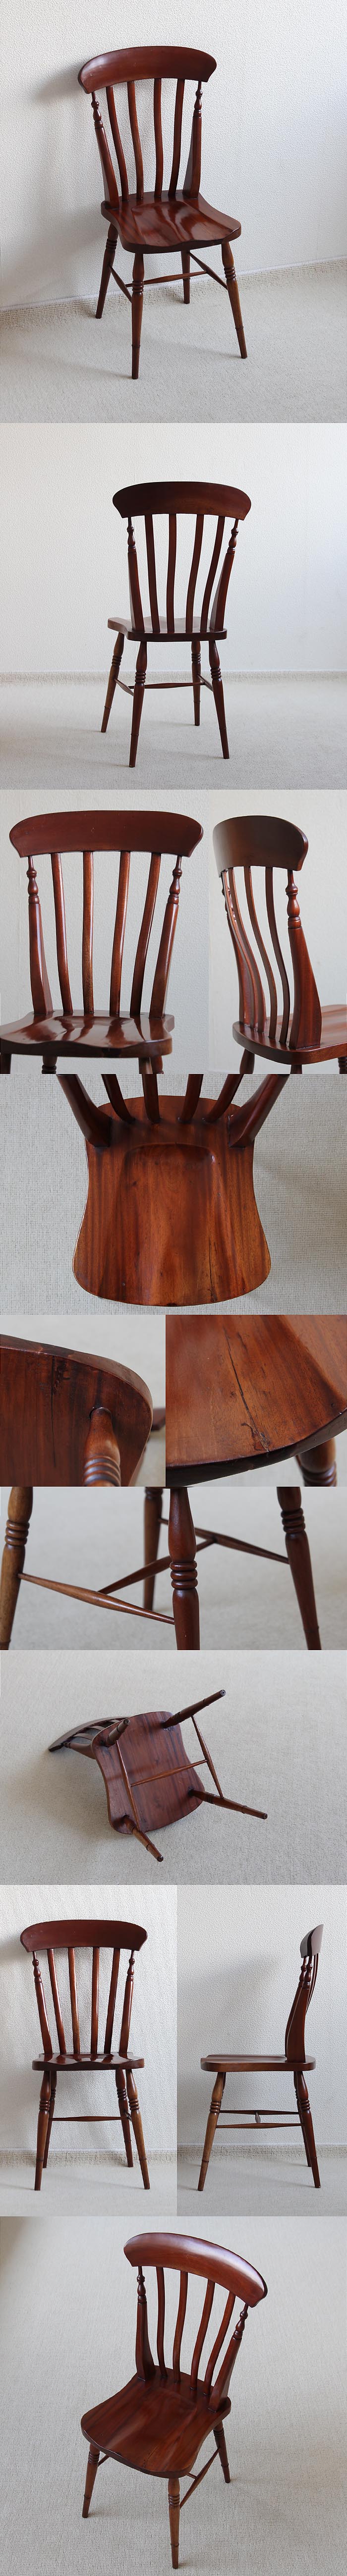 イギリス アンティーク調 チャイルドチェア 木製椅子 ドールチェア 家具「ラスバックチェア」V-834